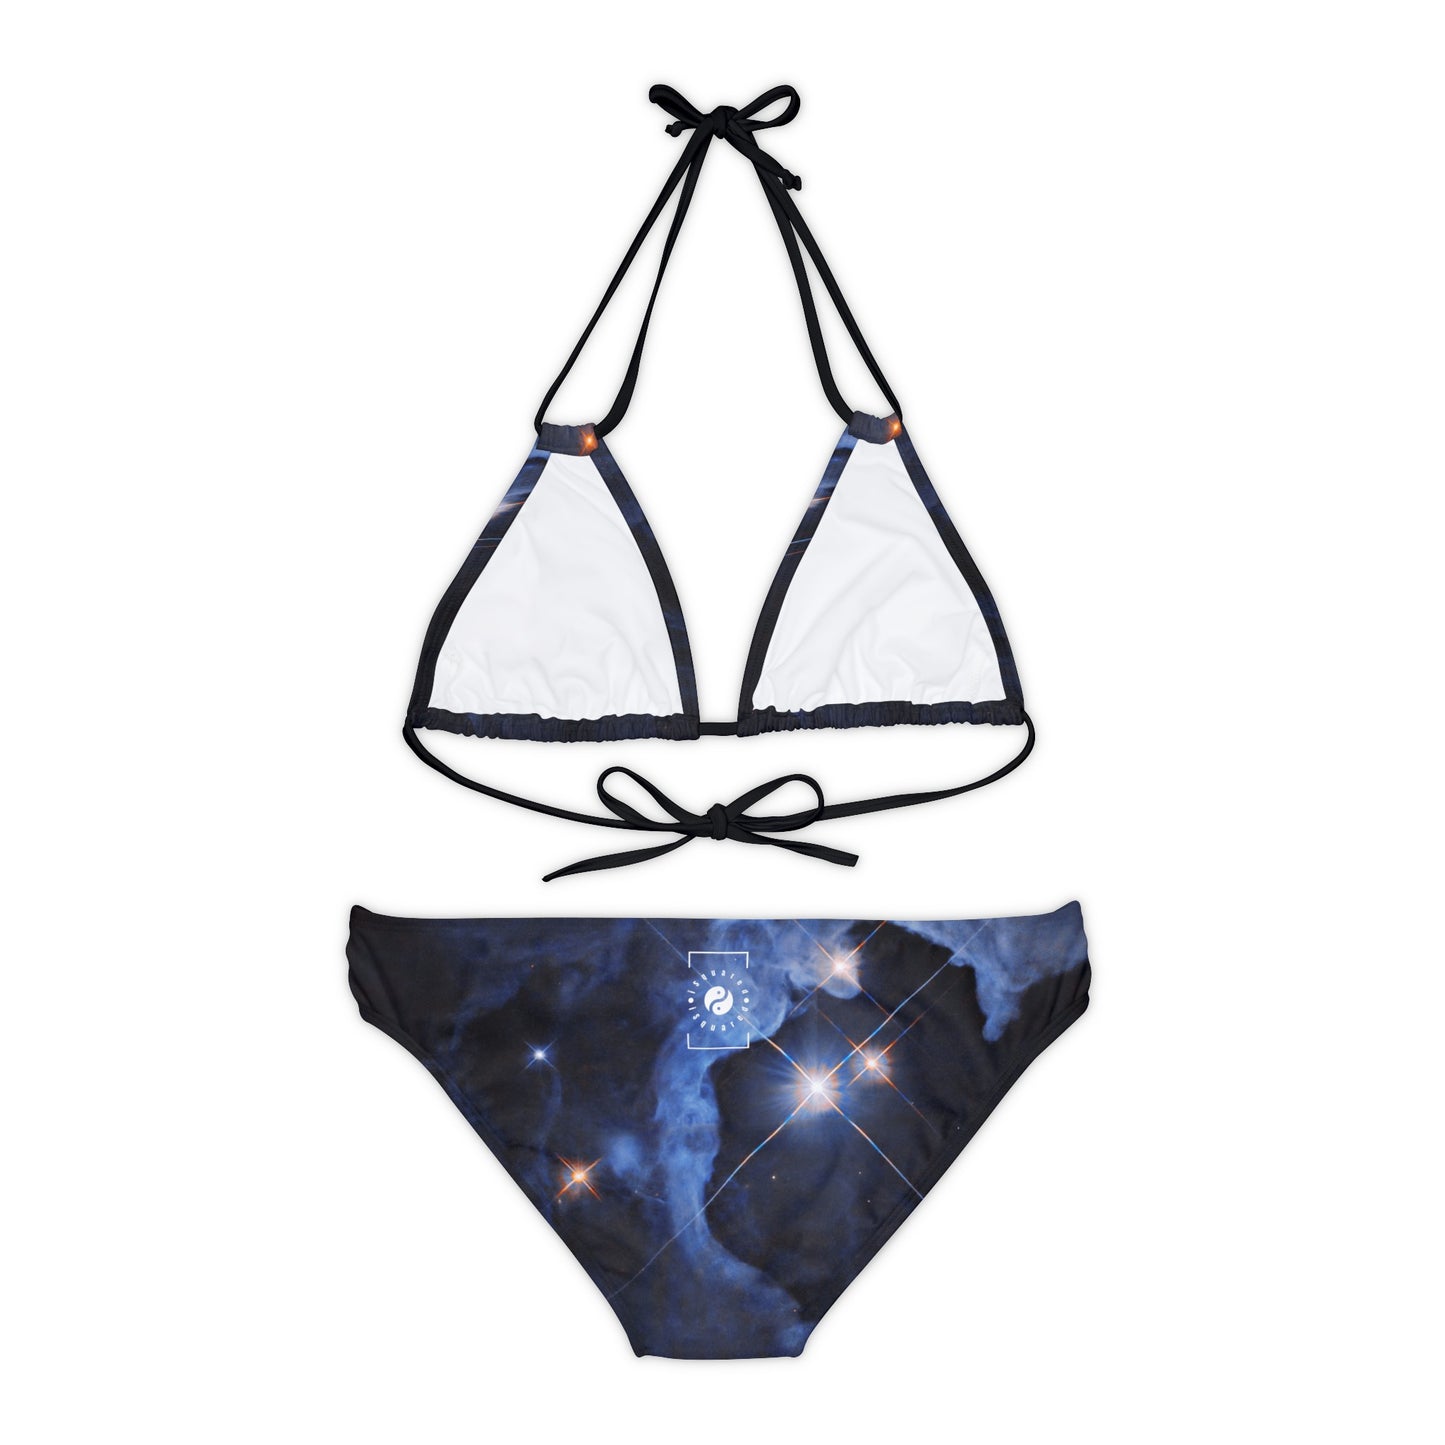 Système 3 étoiles HP Tau, HP Tau G2 et G3 capturé par Hubble - Ensemble bikini à lacets